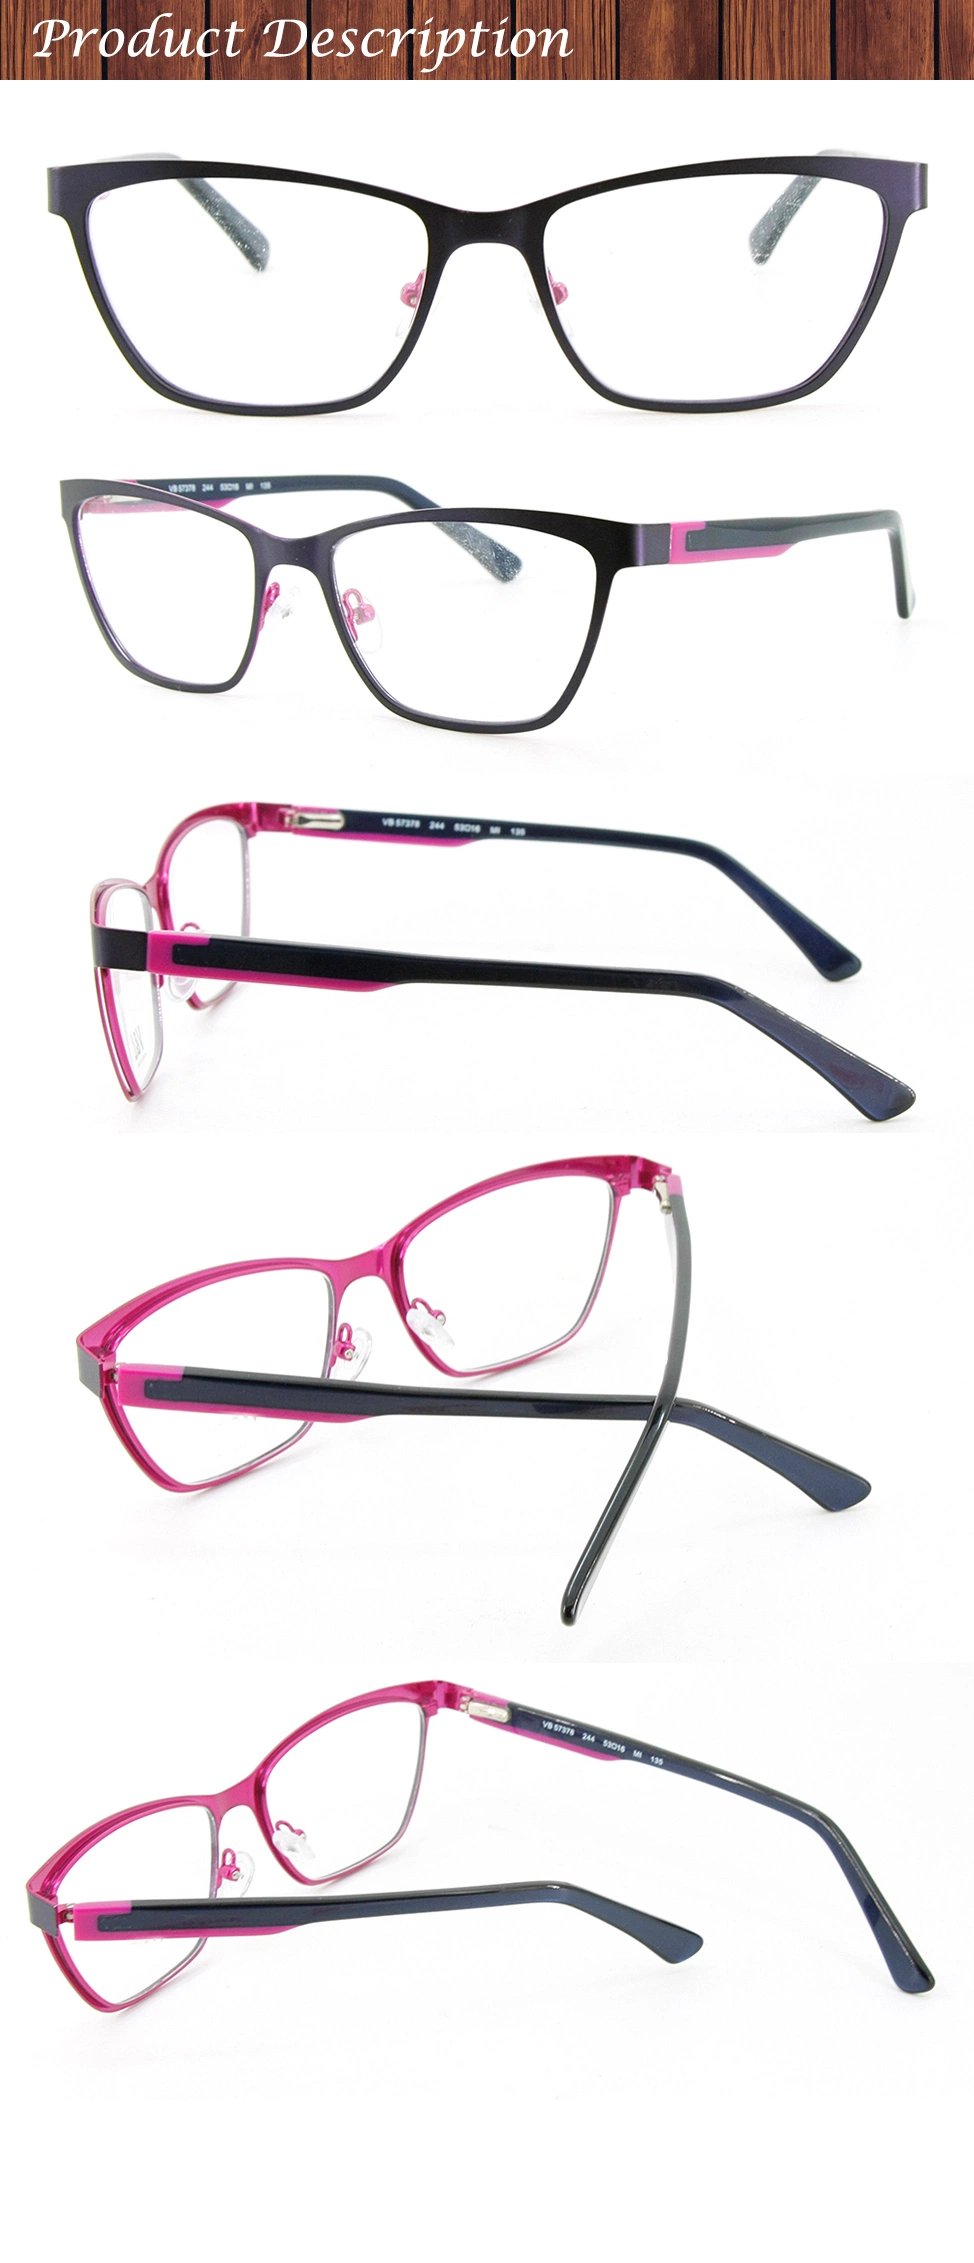 Manufacture Model Wholesale Stock Make Order Metal Optical Frame Eyewear